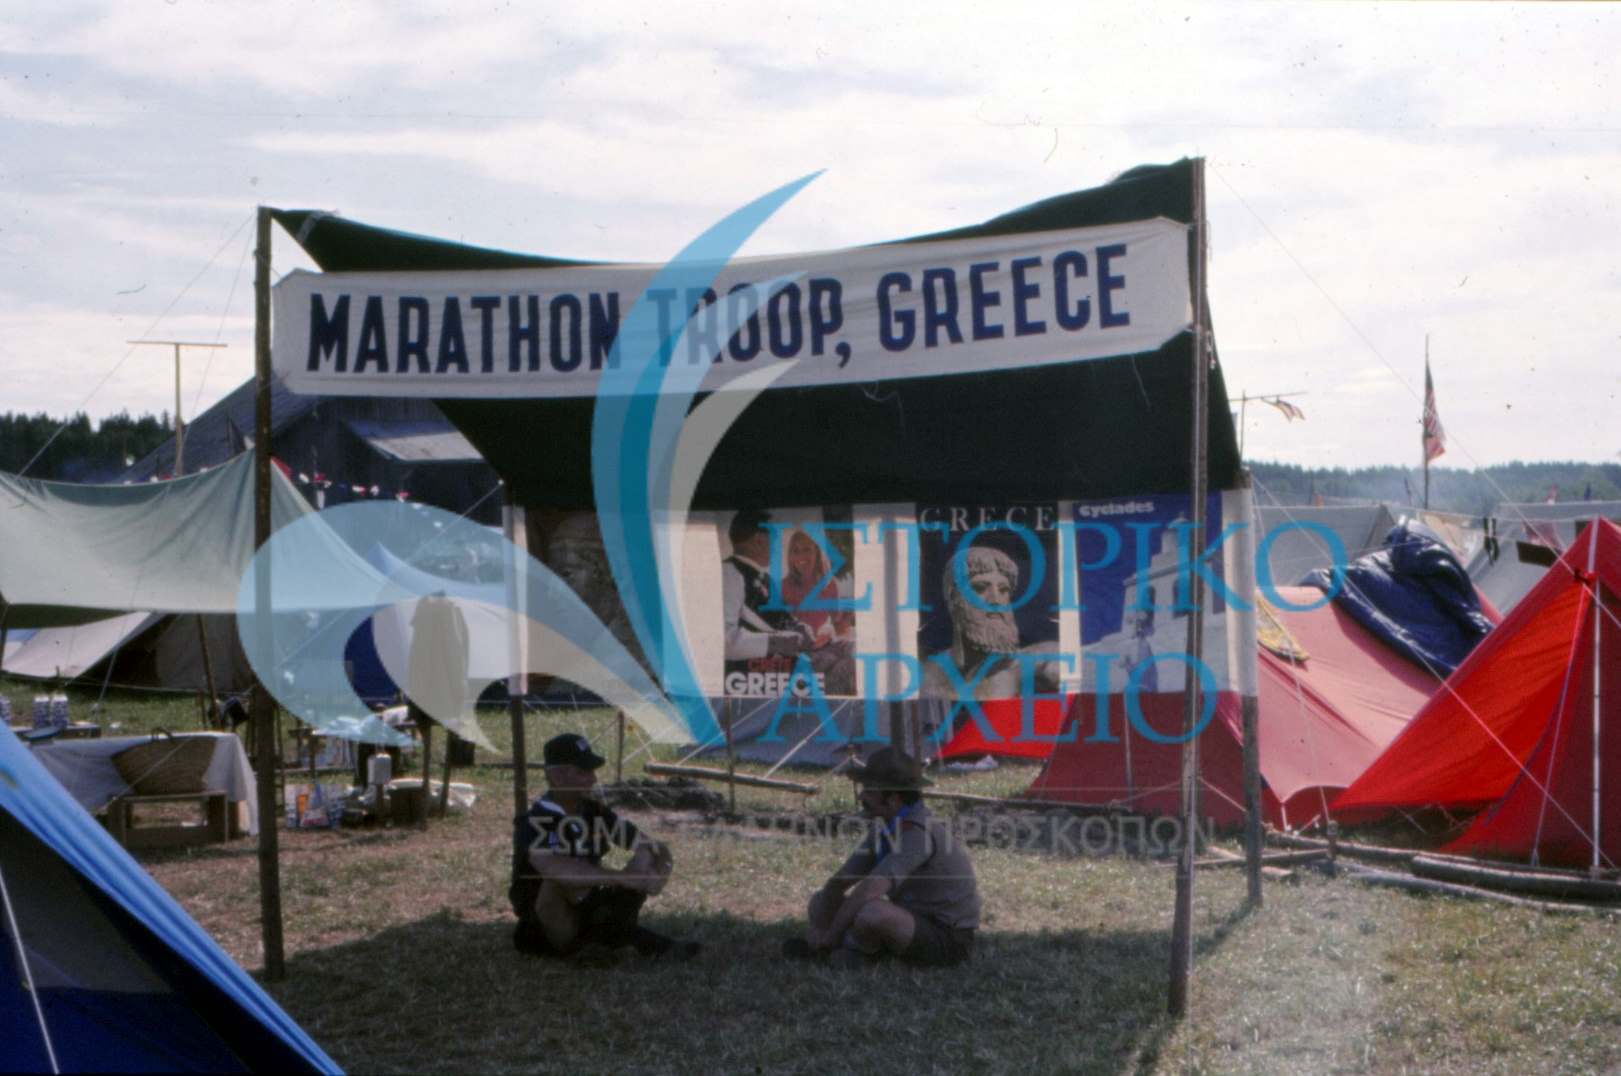 Φωτογραφίες από τις ελληνικές συμμετοχές στα Παγκόσμια Προσκοπικά Τζάμπορη. Οι φωτογραφίες είναι κατανεμημένες σε άλμπουμ ανά Τζάμπορη